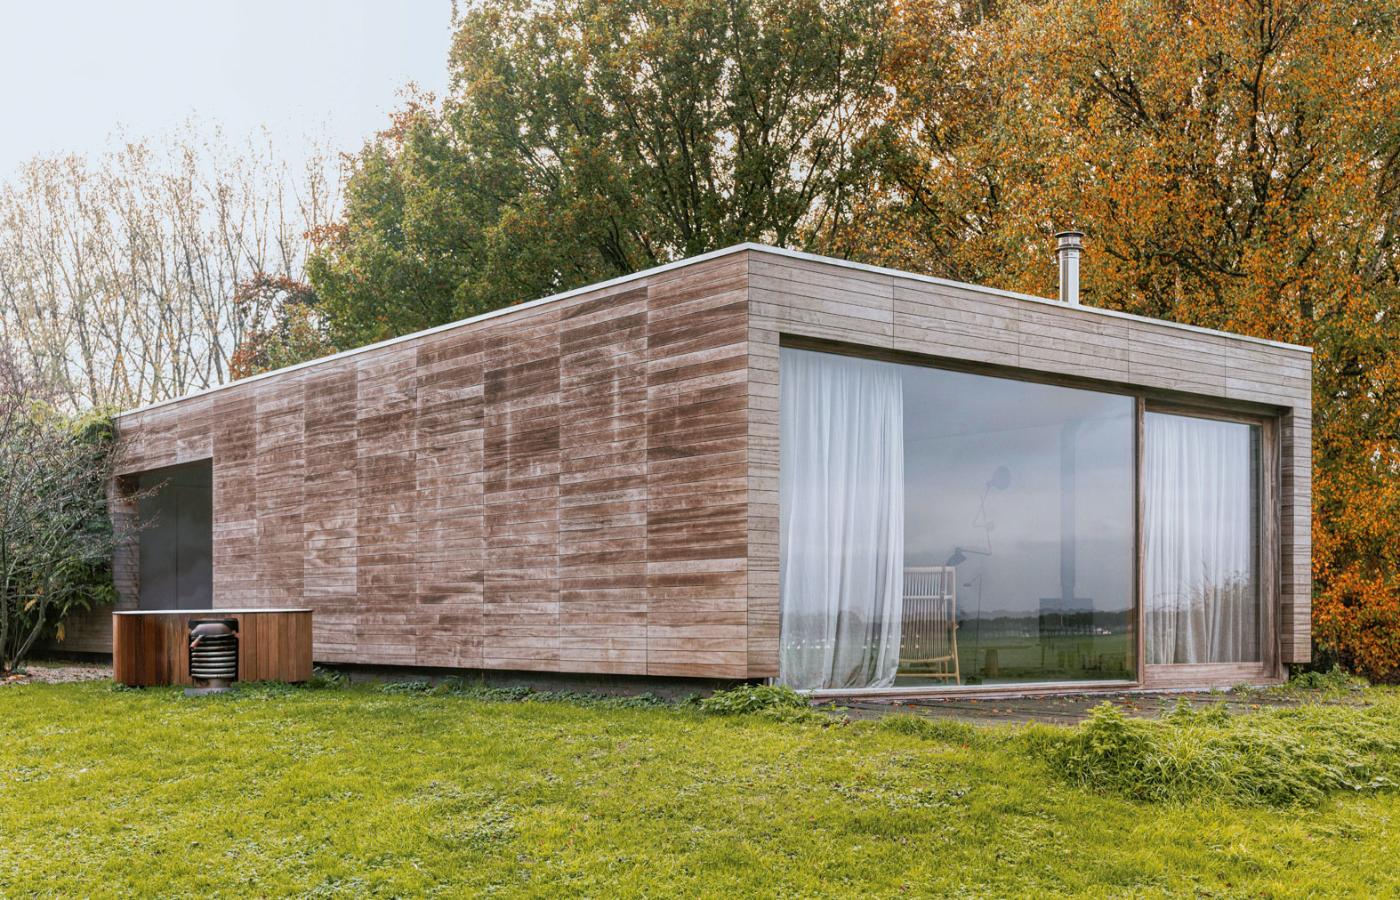 Drewniana, minimalistyczna architektura budynków pozostała praktycznie niezmieniona.